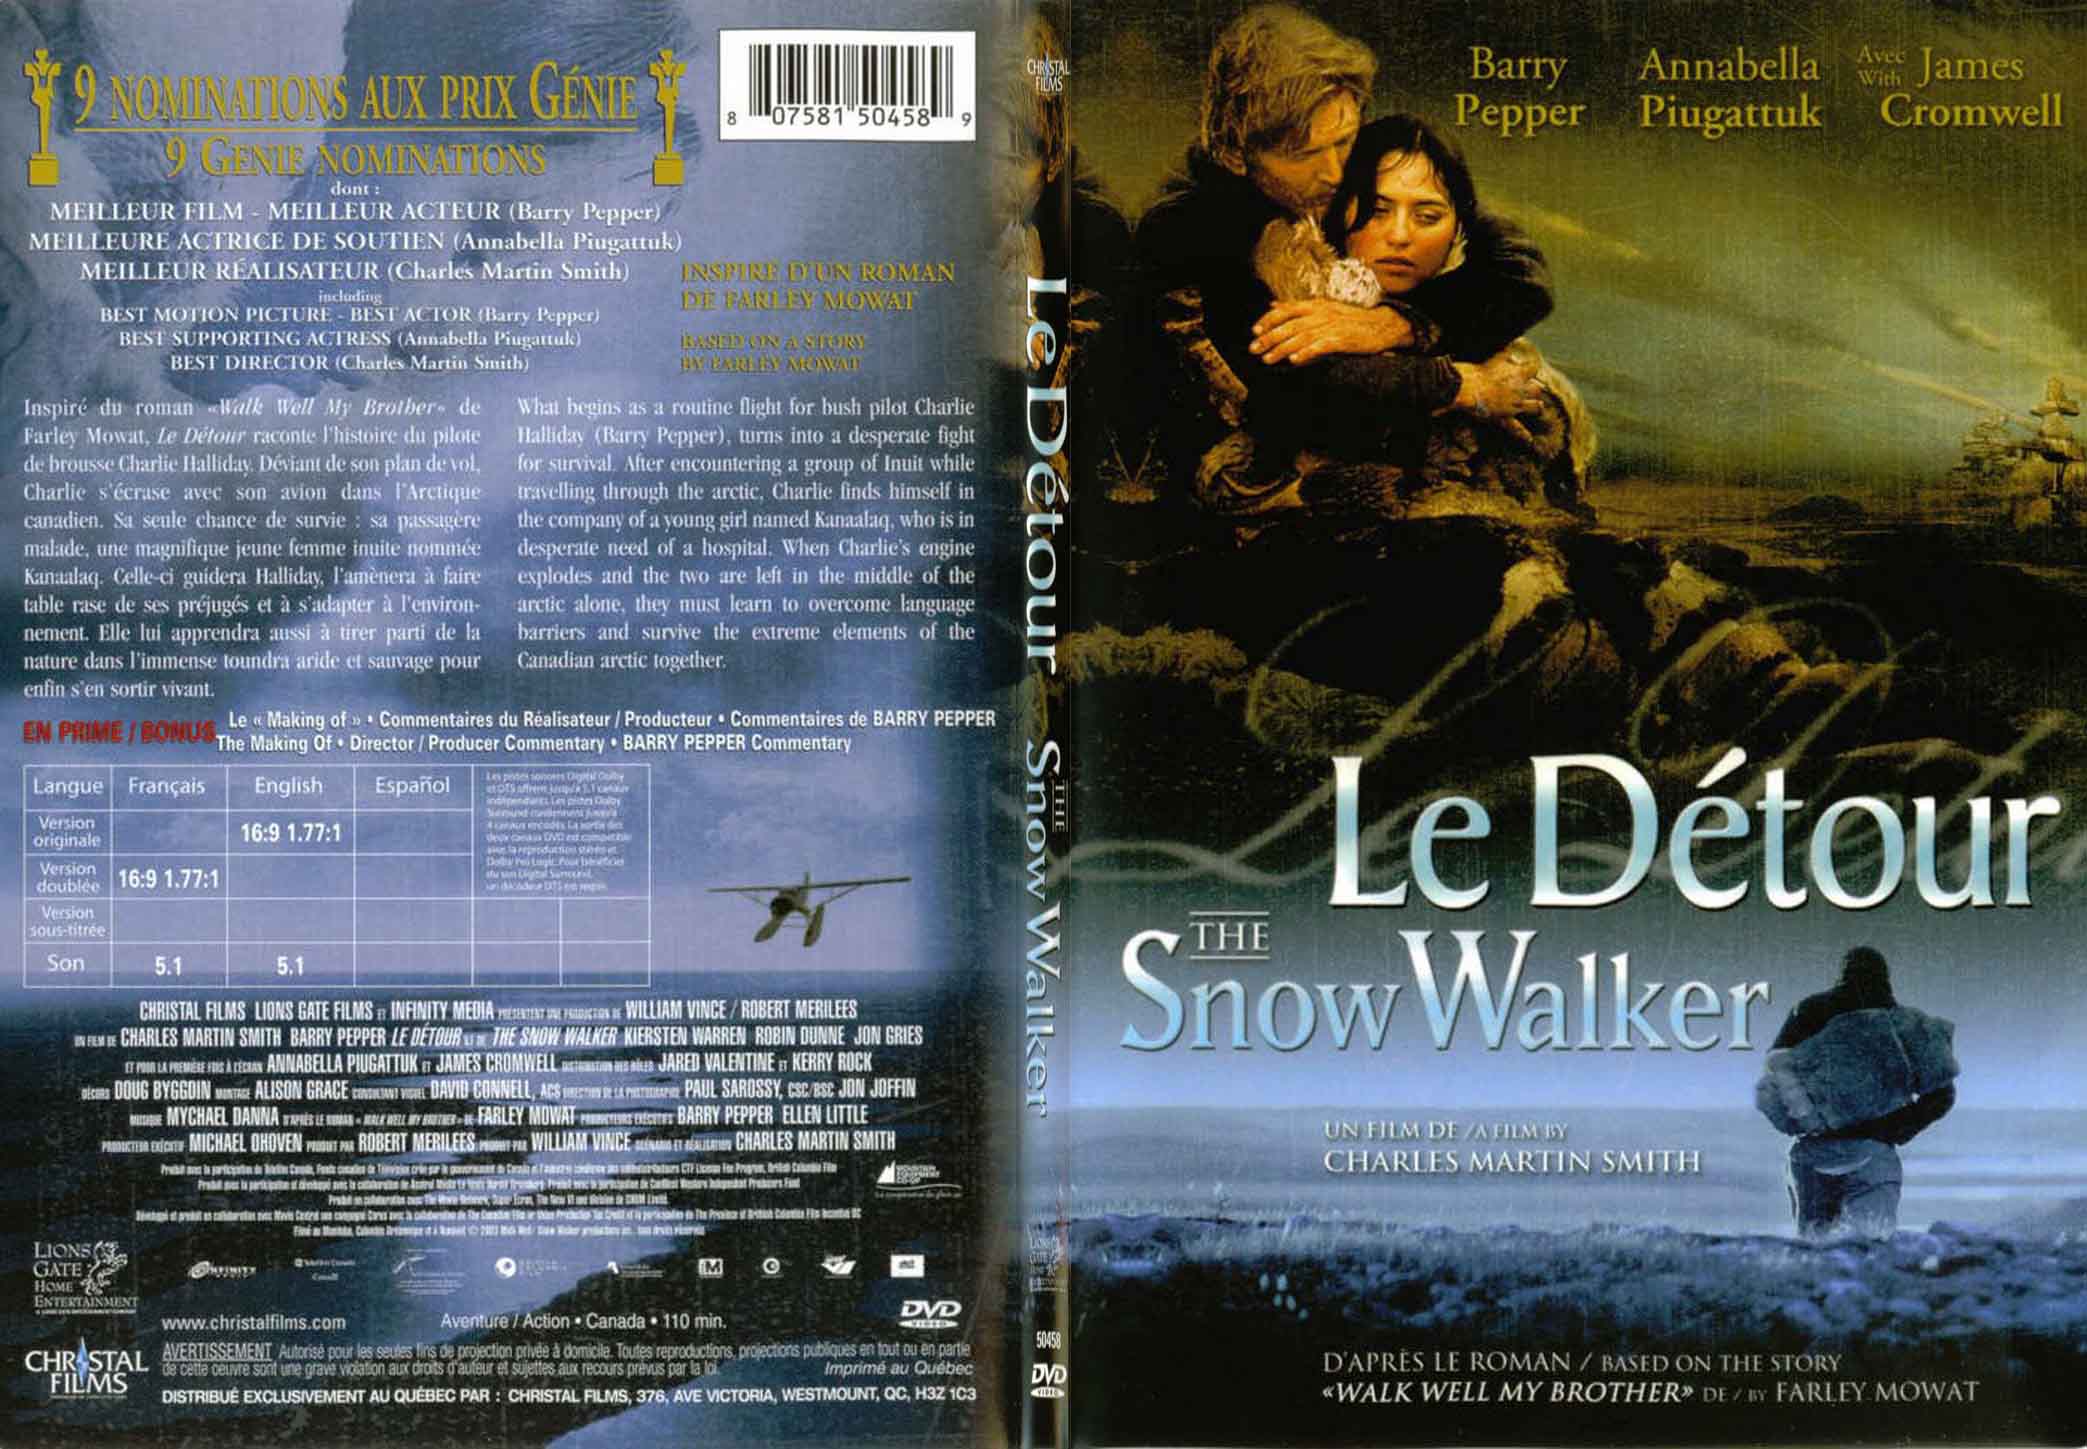 Jaquette DVD Le dtour - SLIM